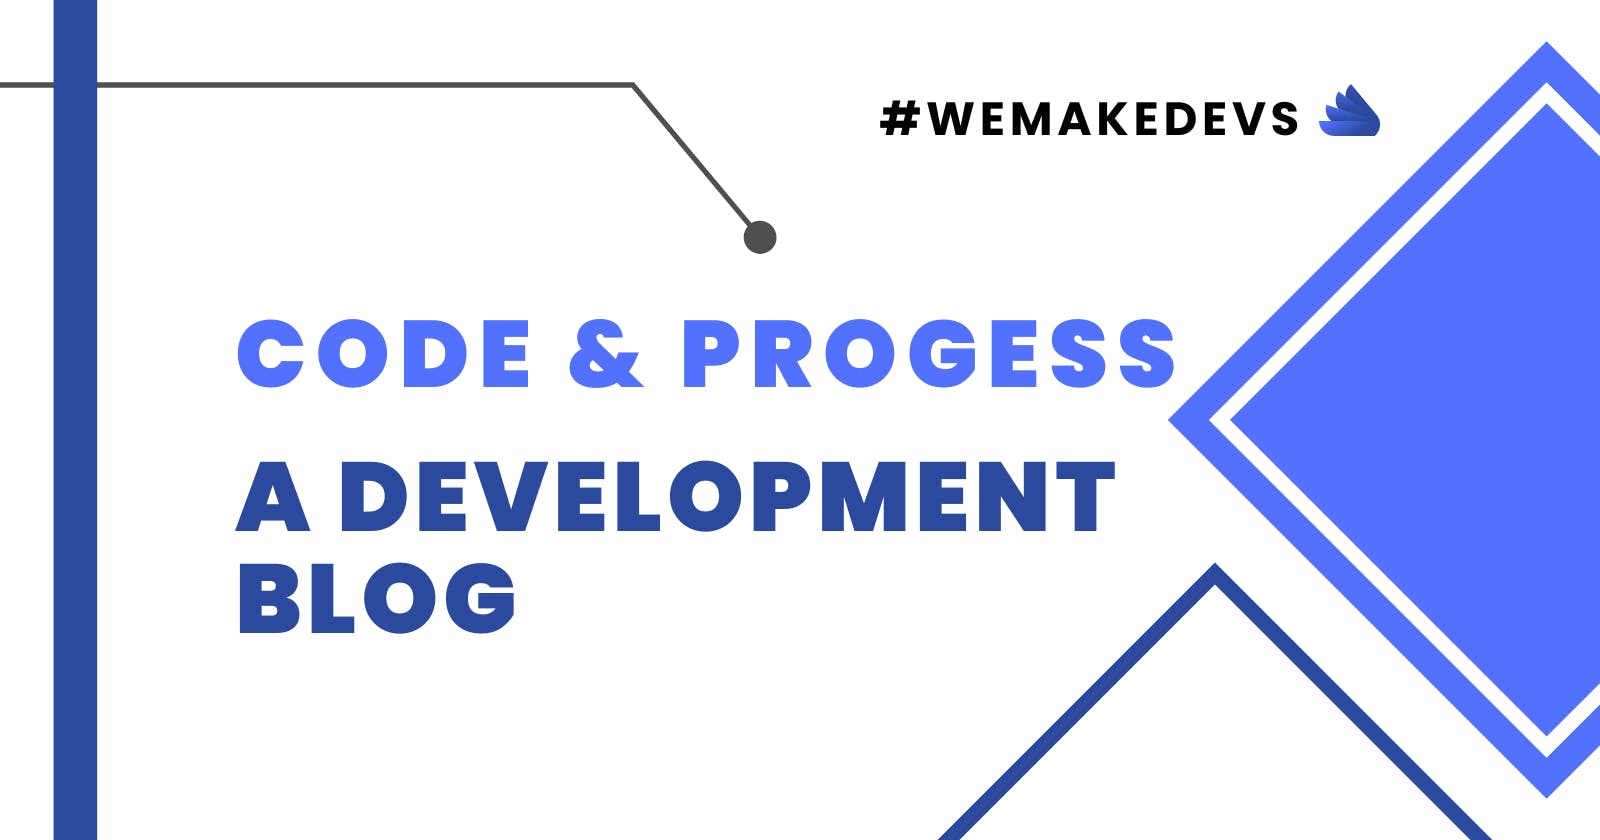 Code & Progress: A Development Blog